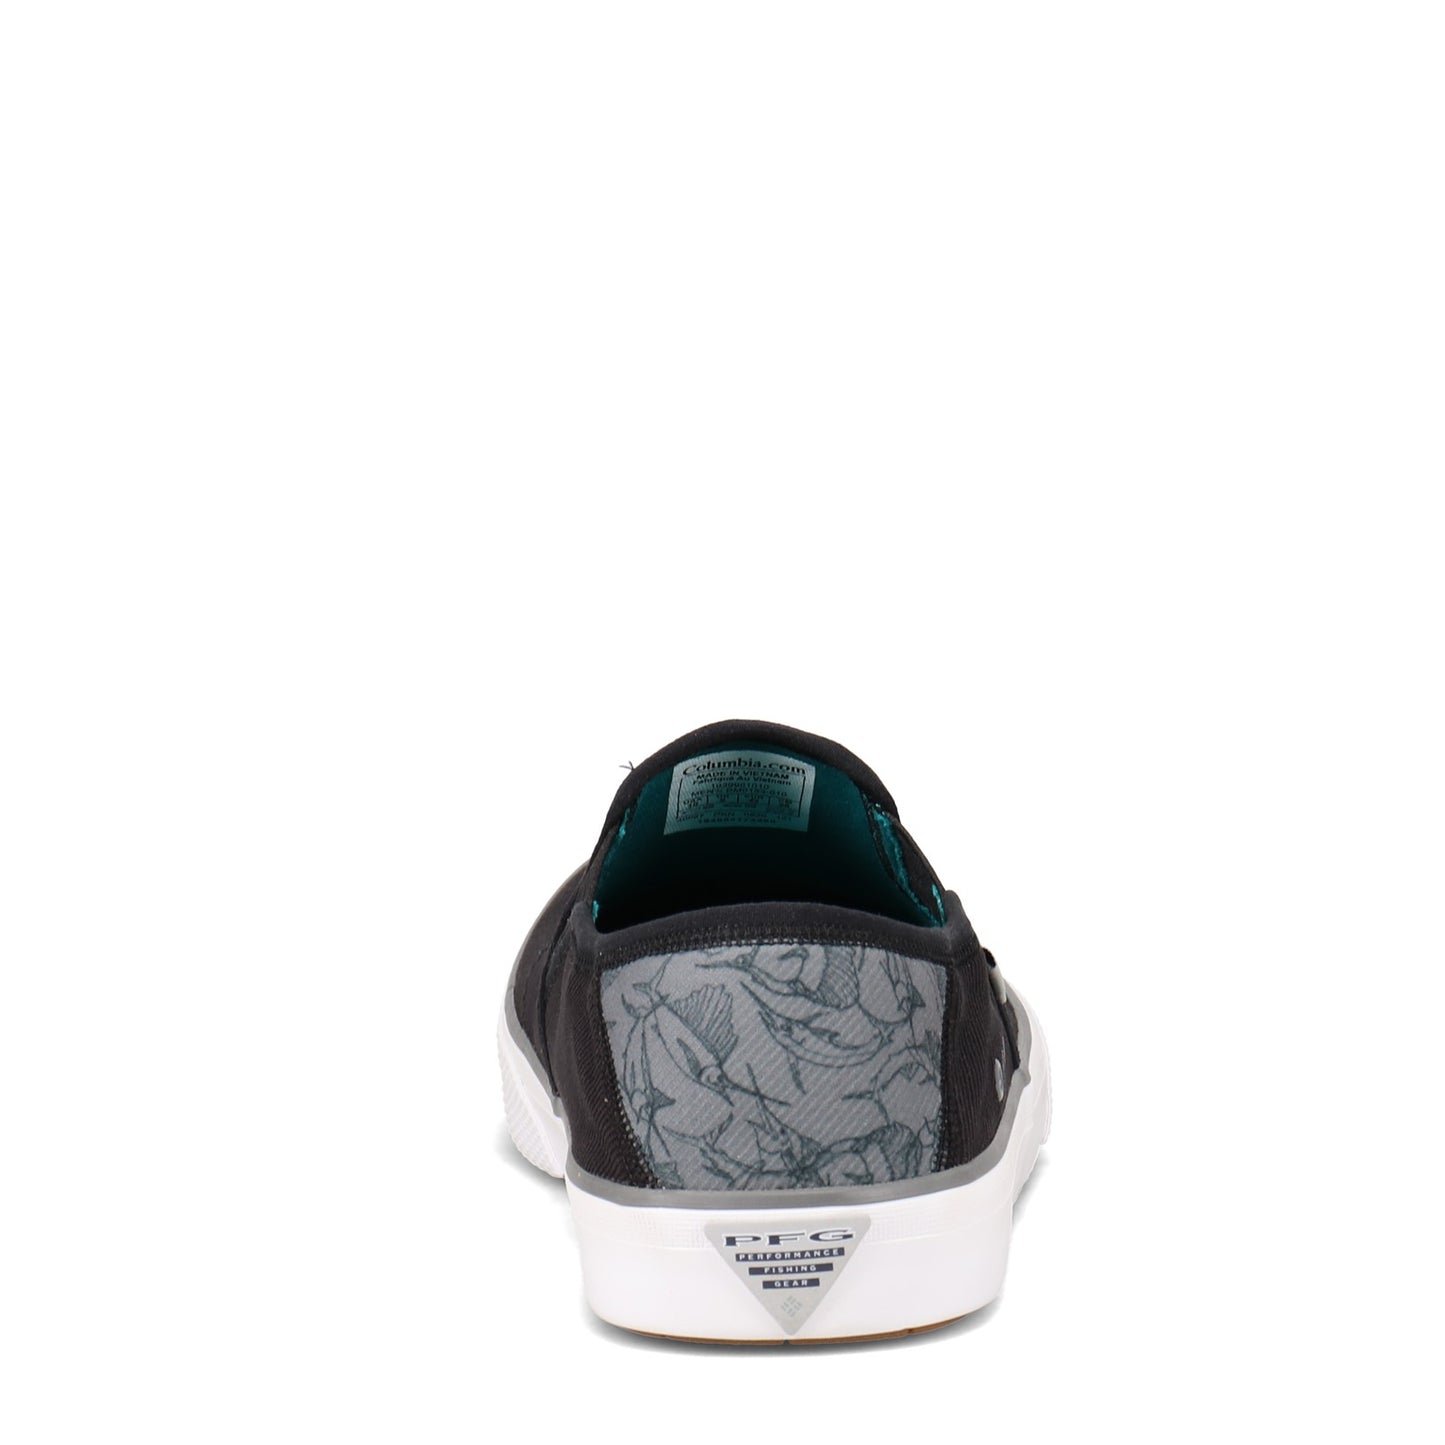 Peltz Shoes  Men's Columbia Slack Tide Slip-On PFG Sneaker BLACK / GRAY 1939951-010